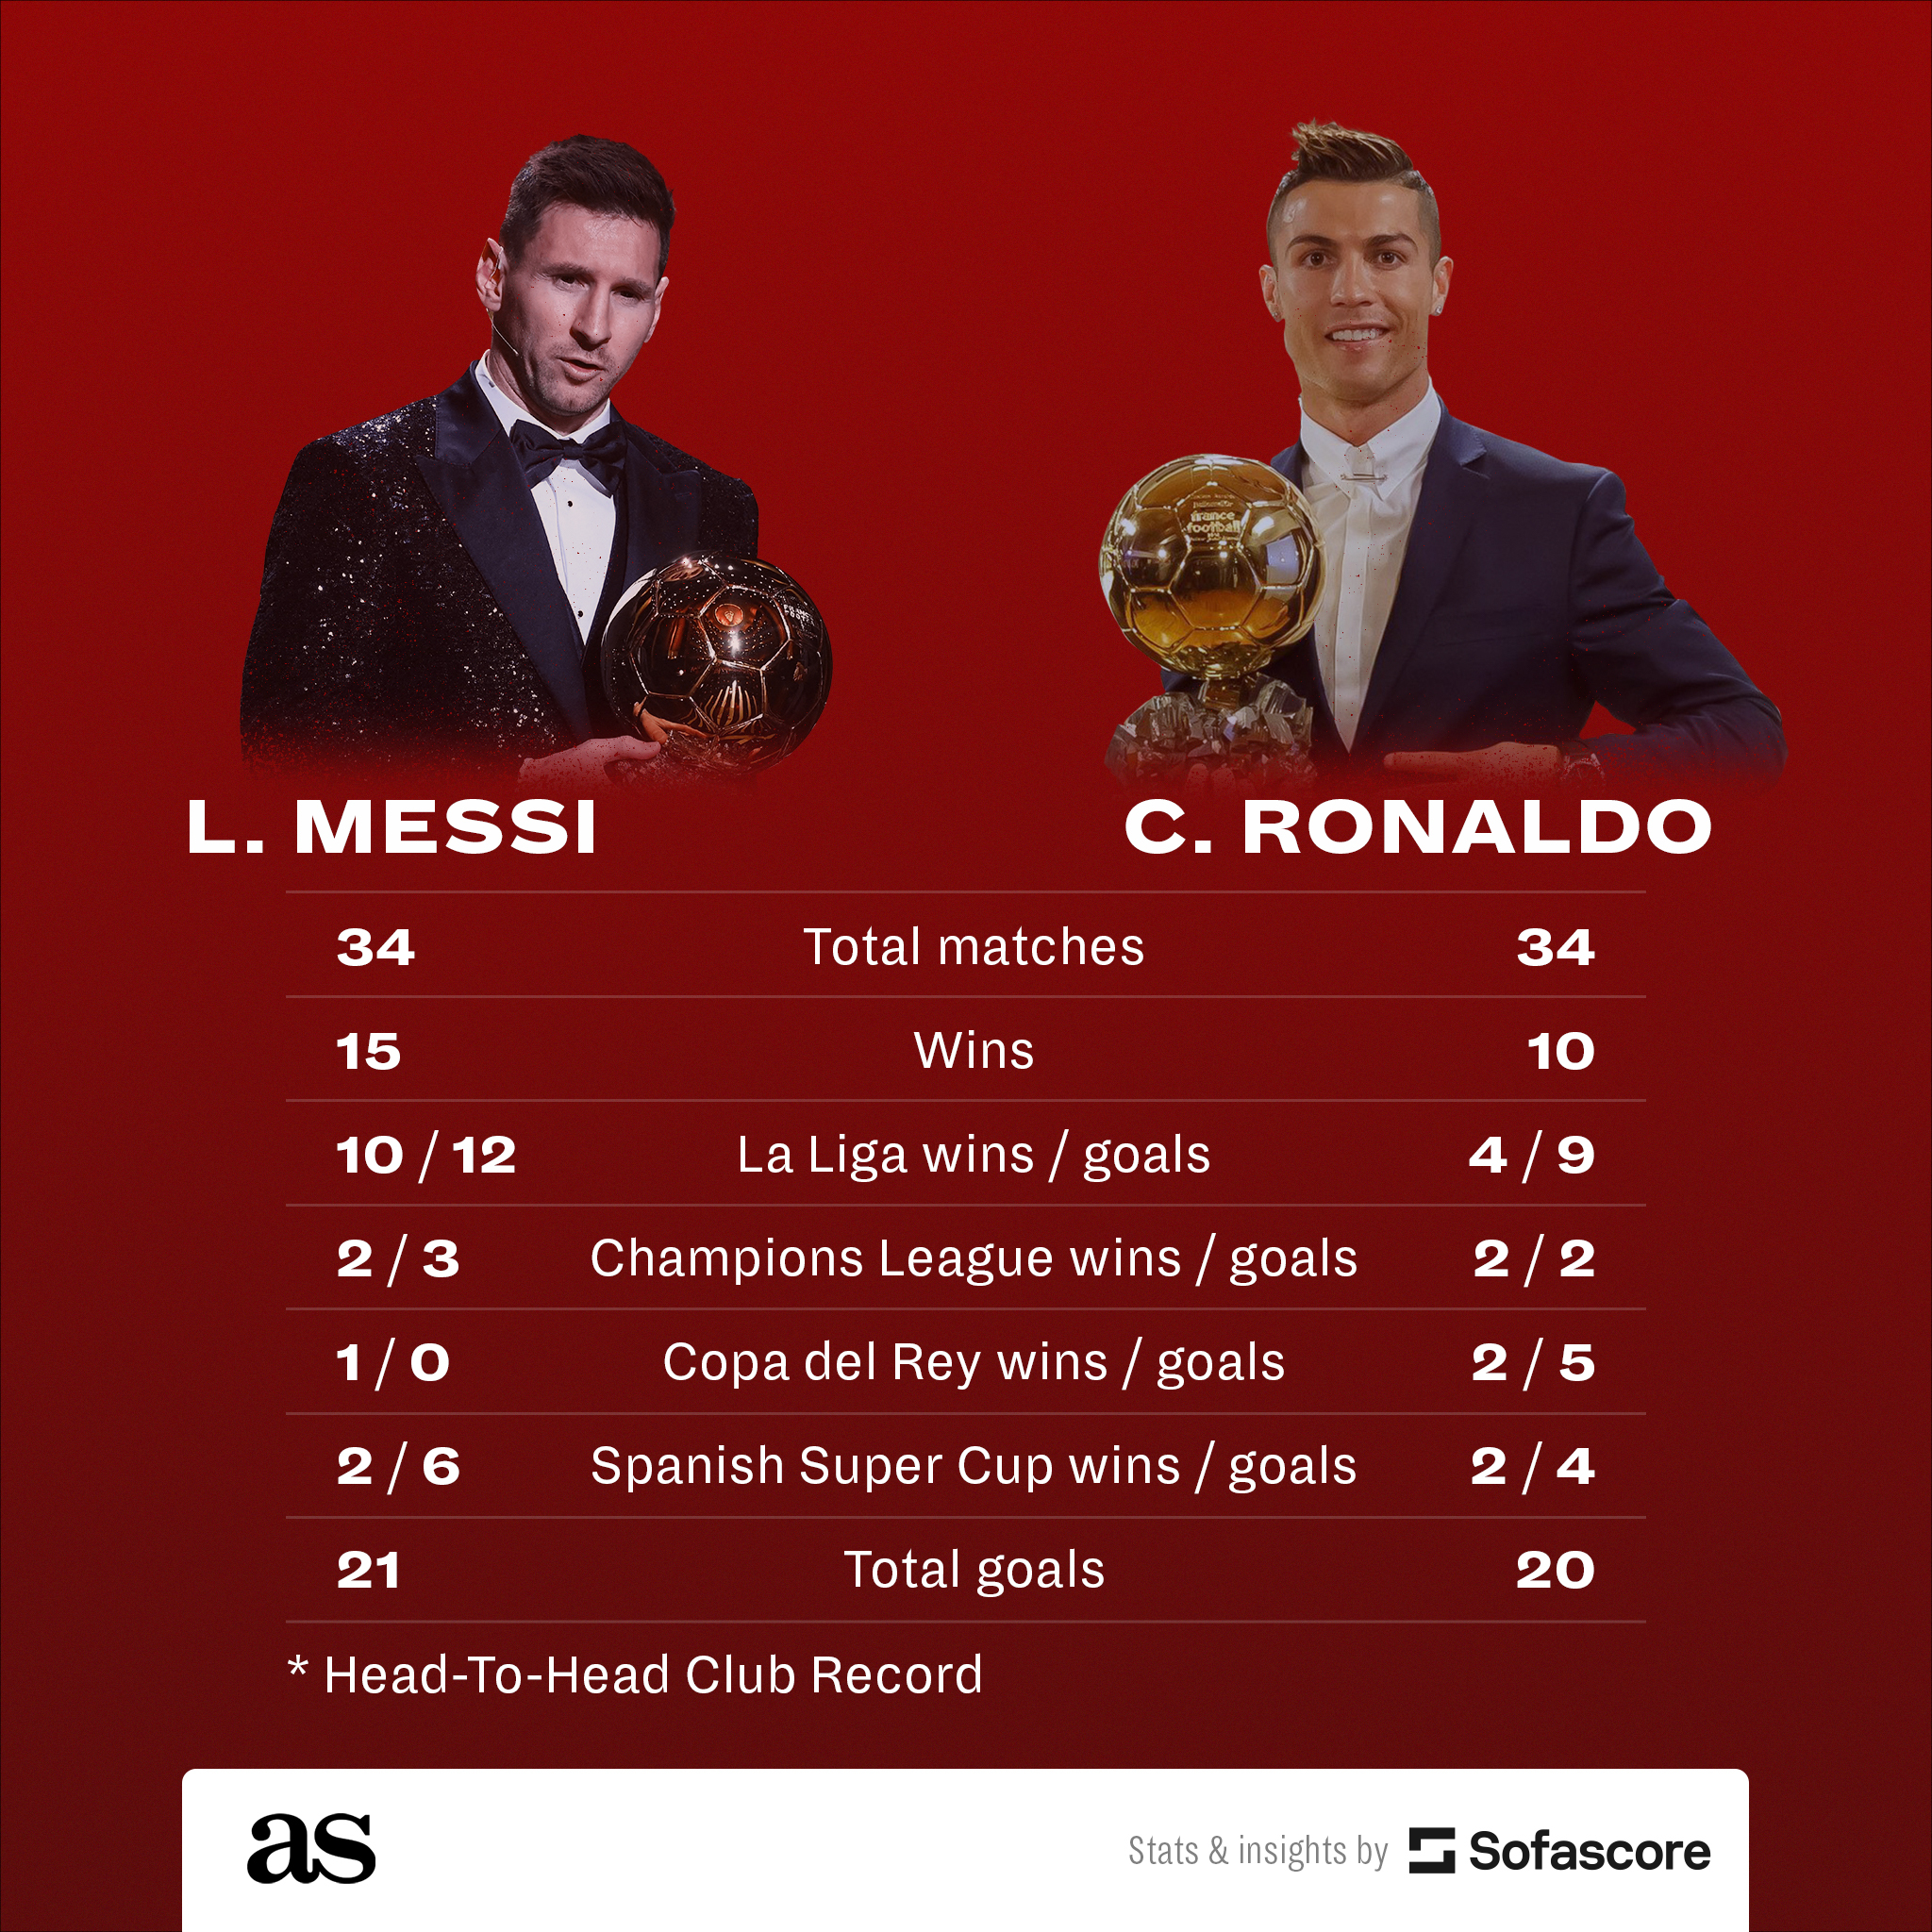 STATS: Lionel Messi vs. Cristiano Ronaldo, head-to-head - Barca Blaugranes